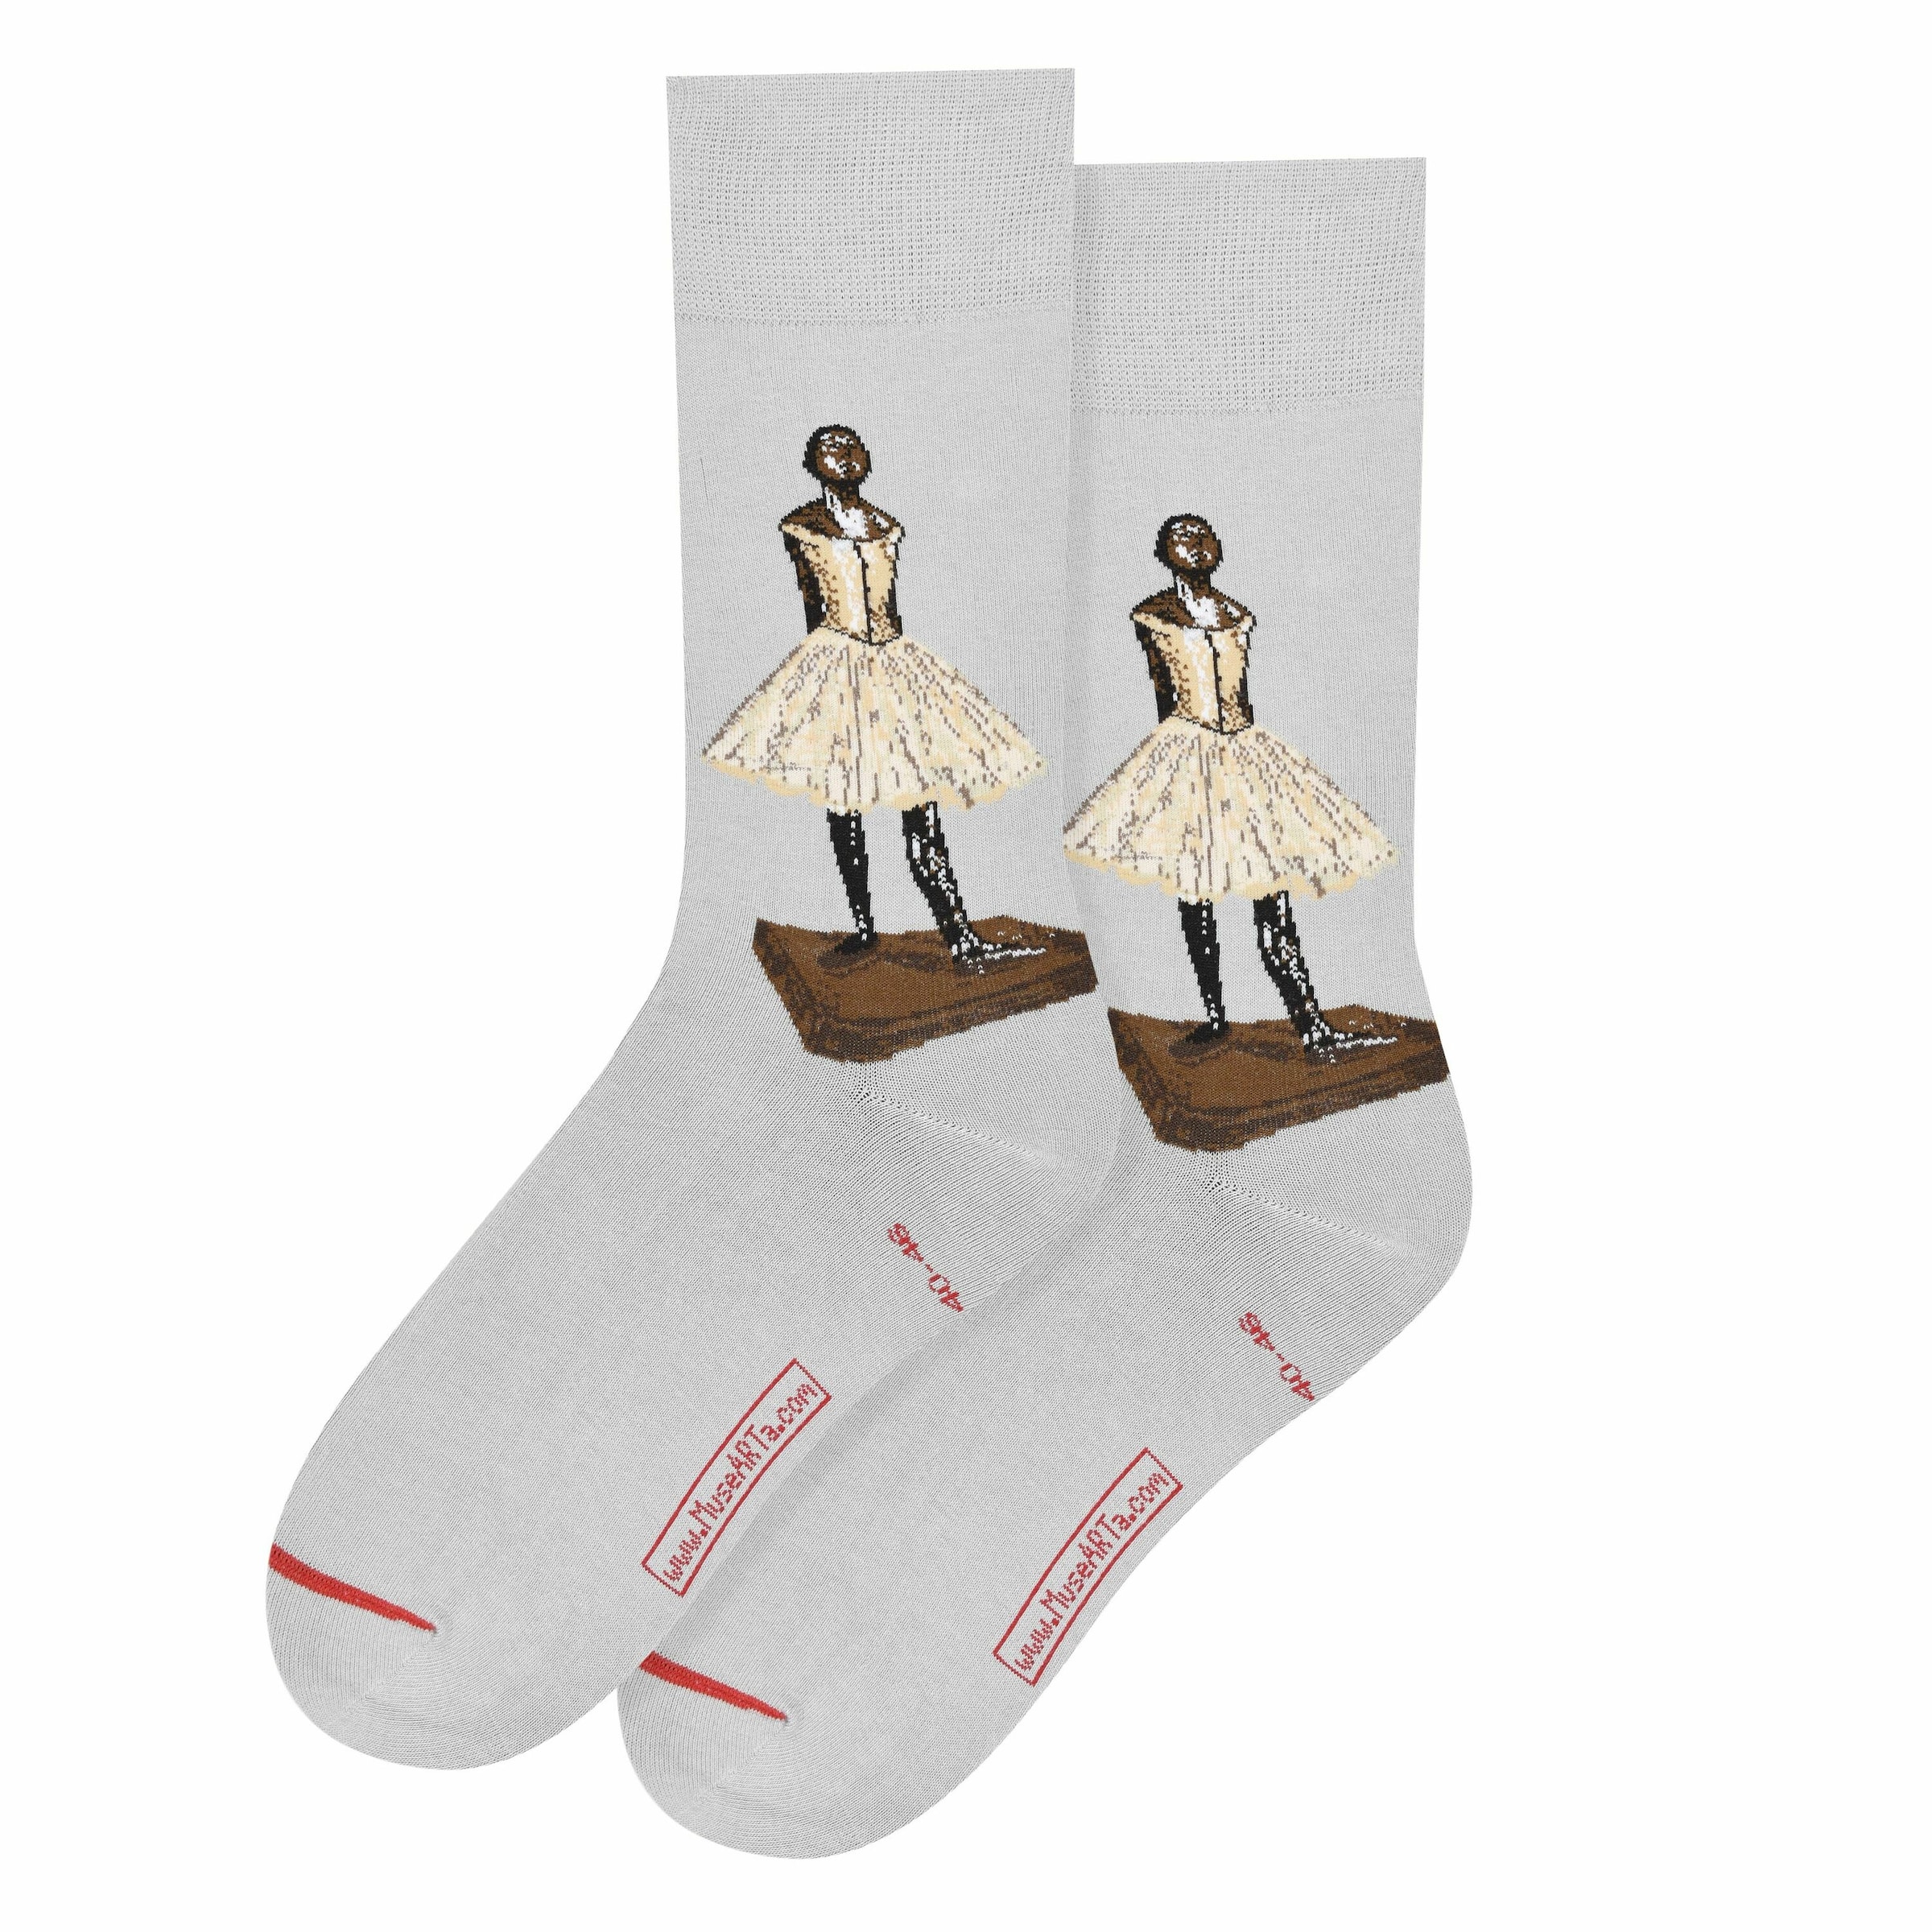 MuseARTa Socken Edgar Degas - Kleine Vierzehnjährige Tänzerin in Hellgrau 